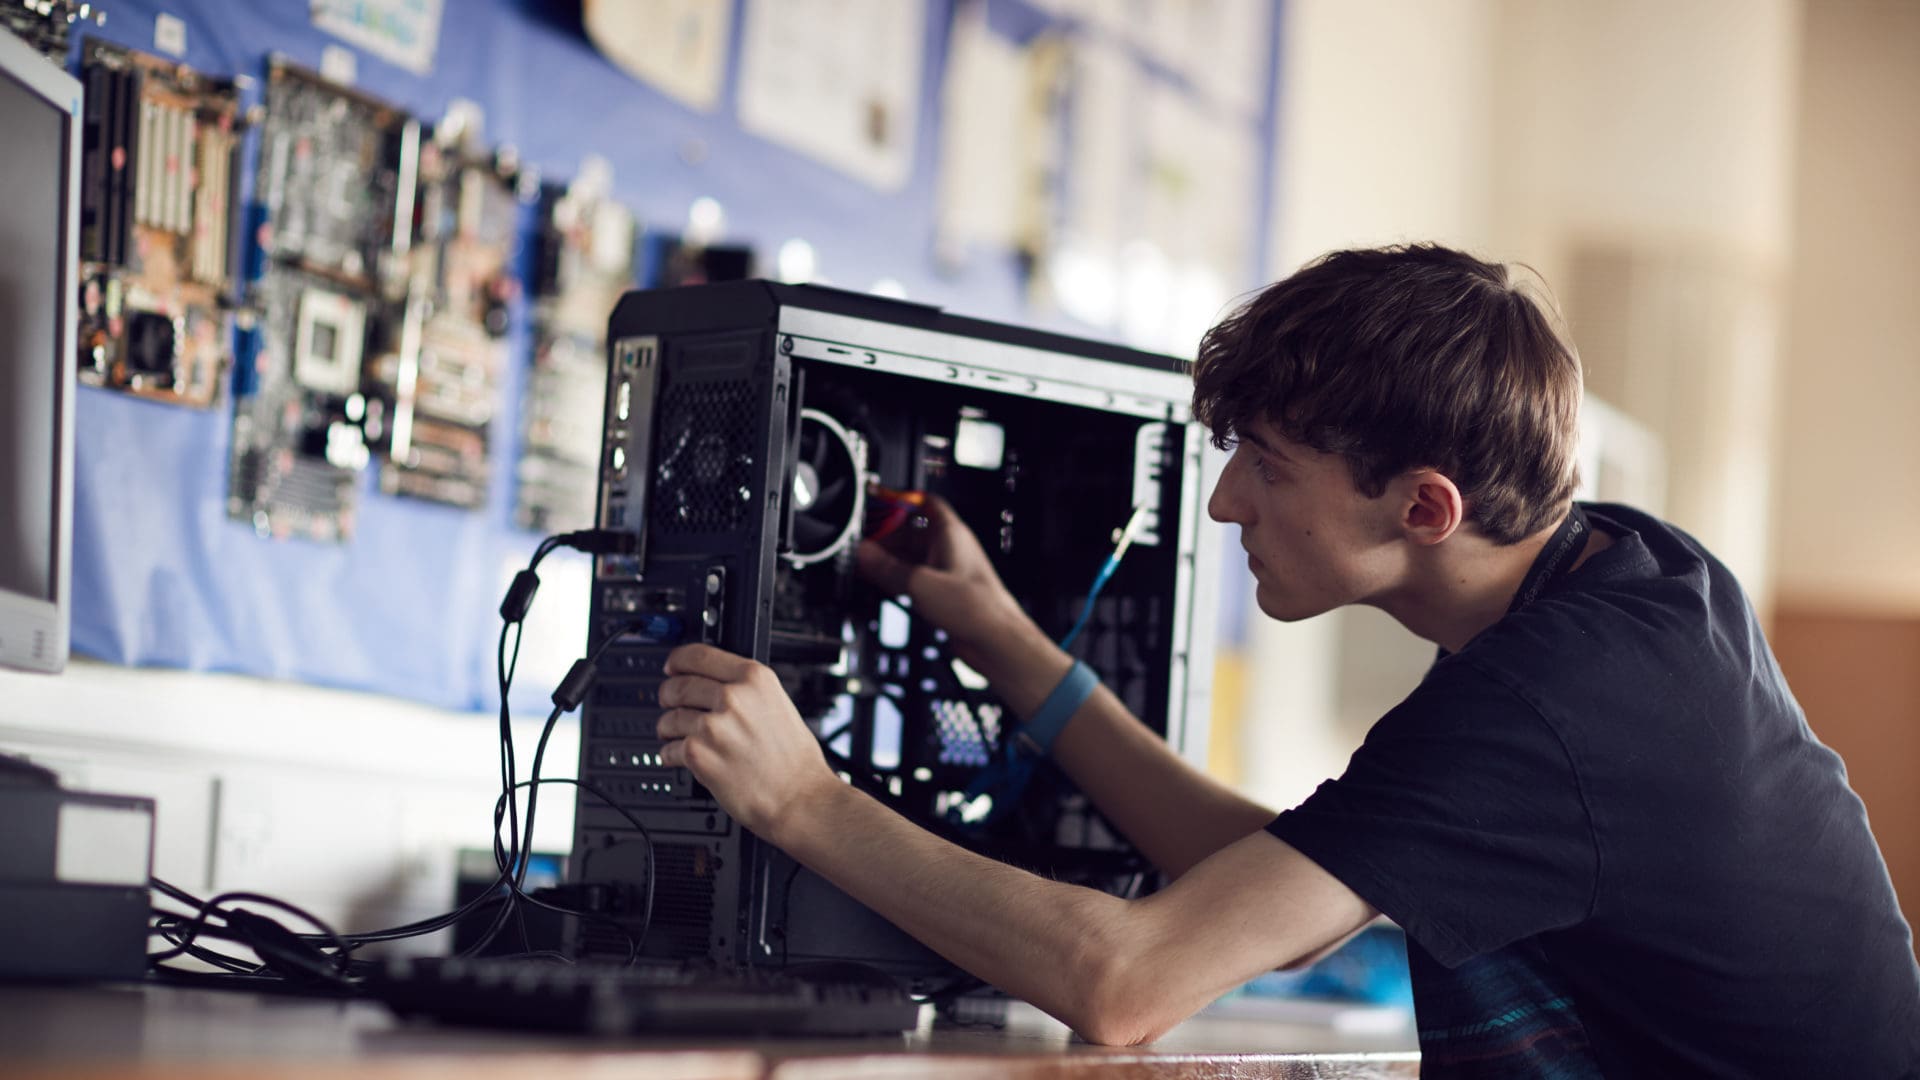 糖心vlog会员 student focusing on fixing a computer on an IT course